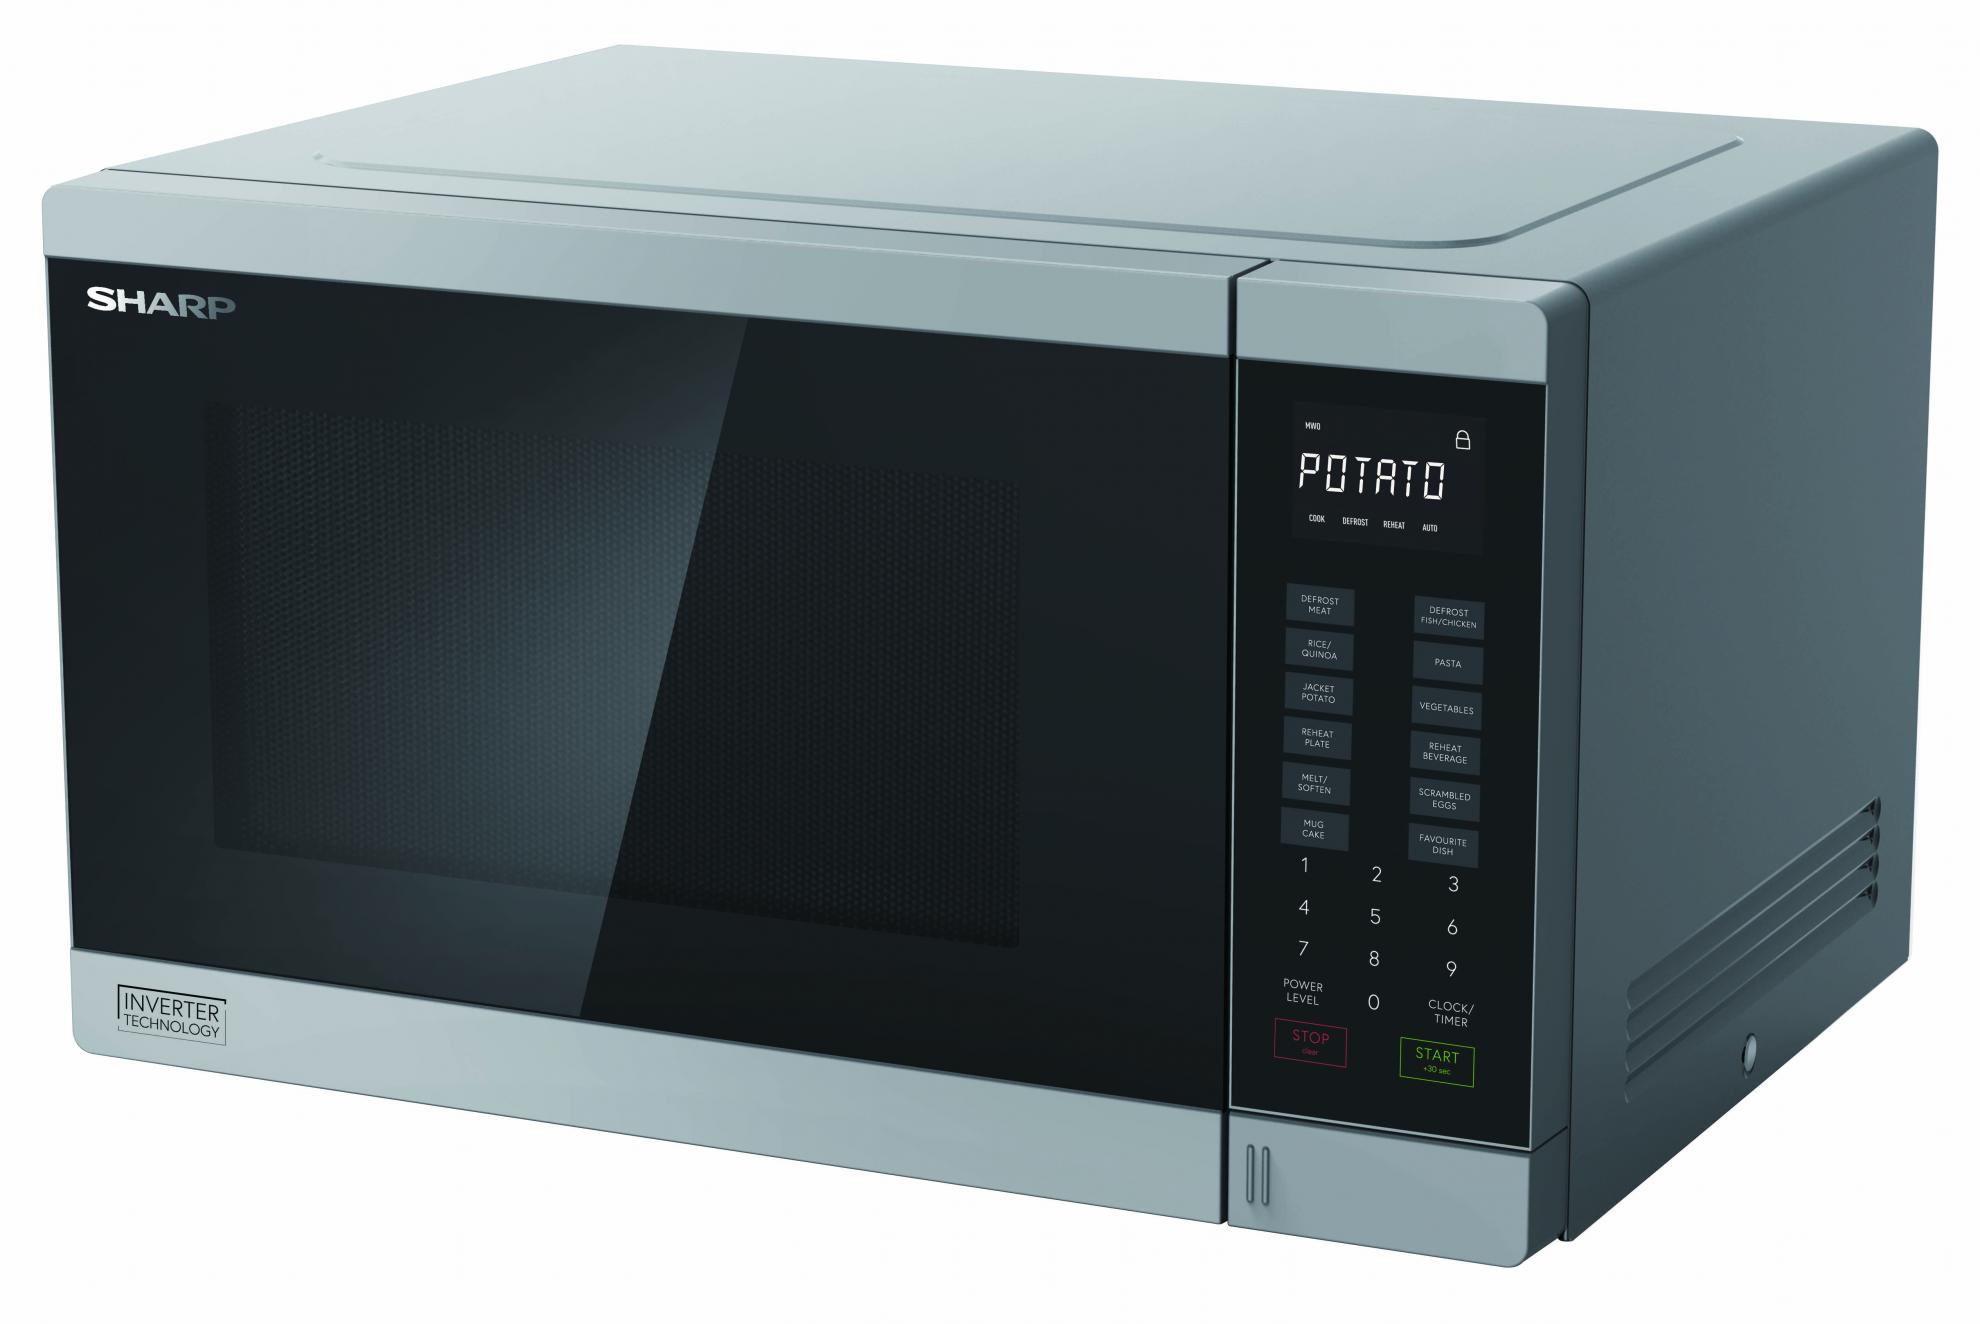 Midsized Microwave - Silver - 1200W 